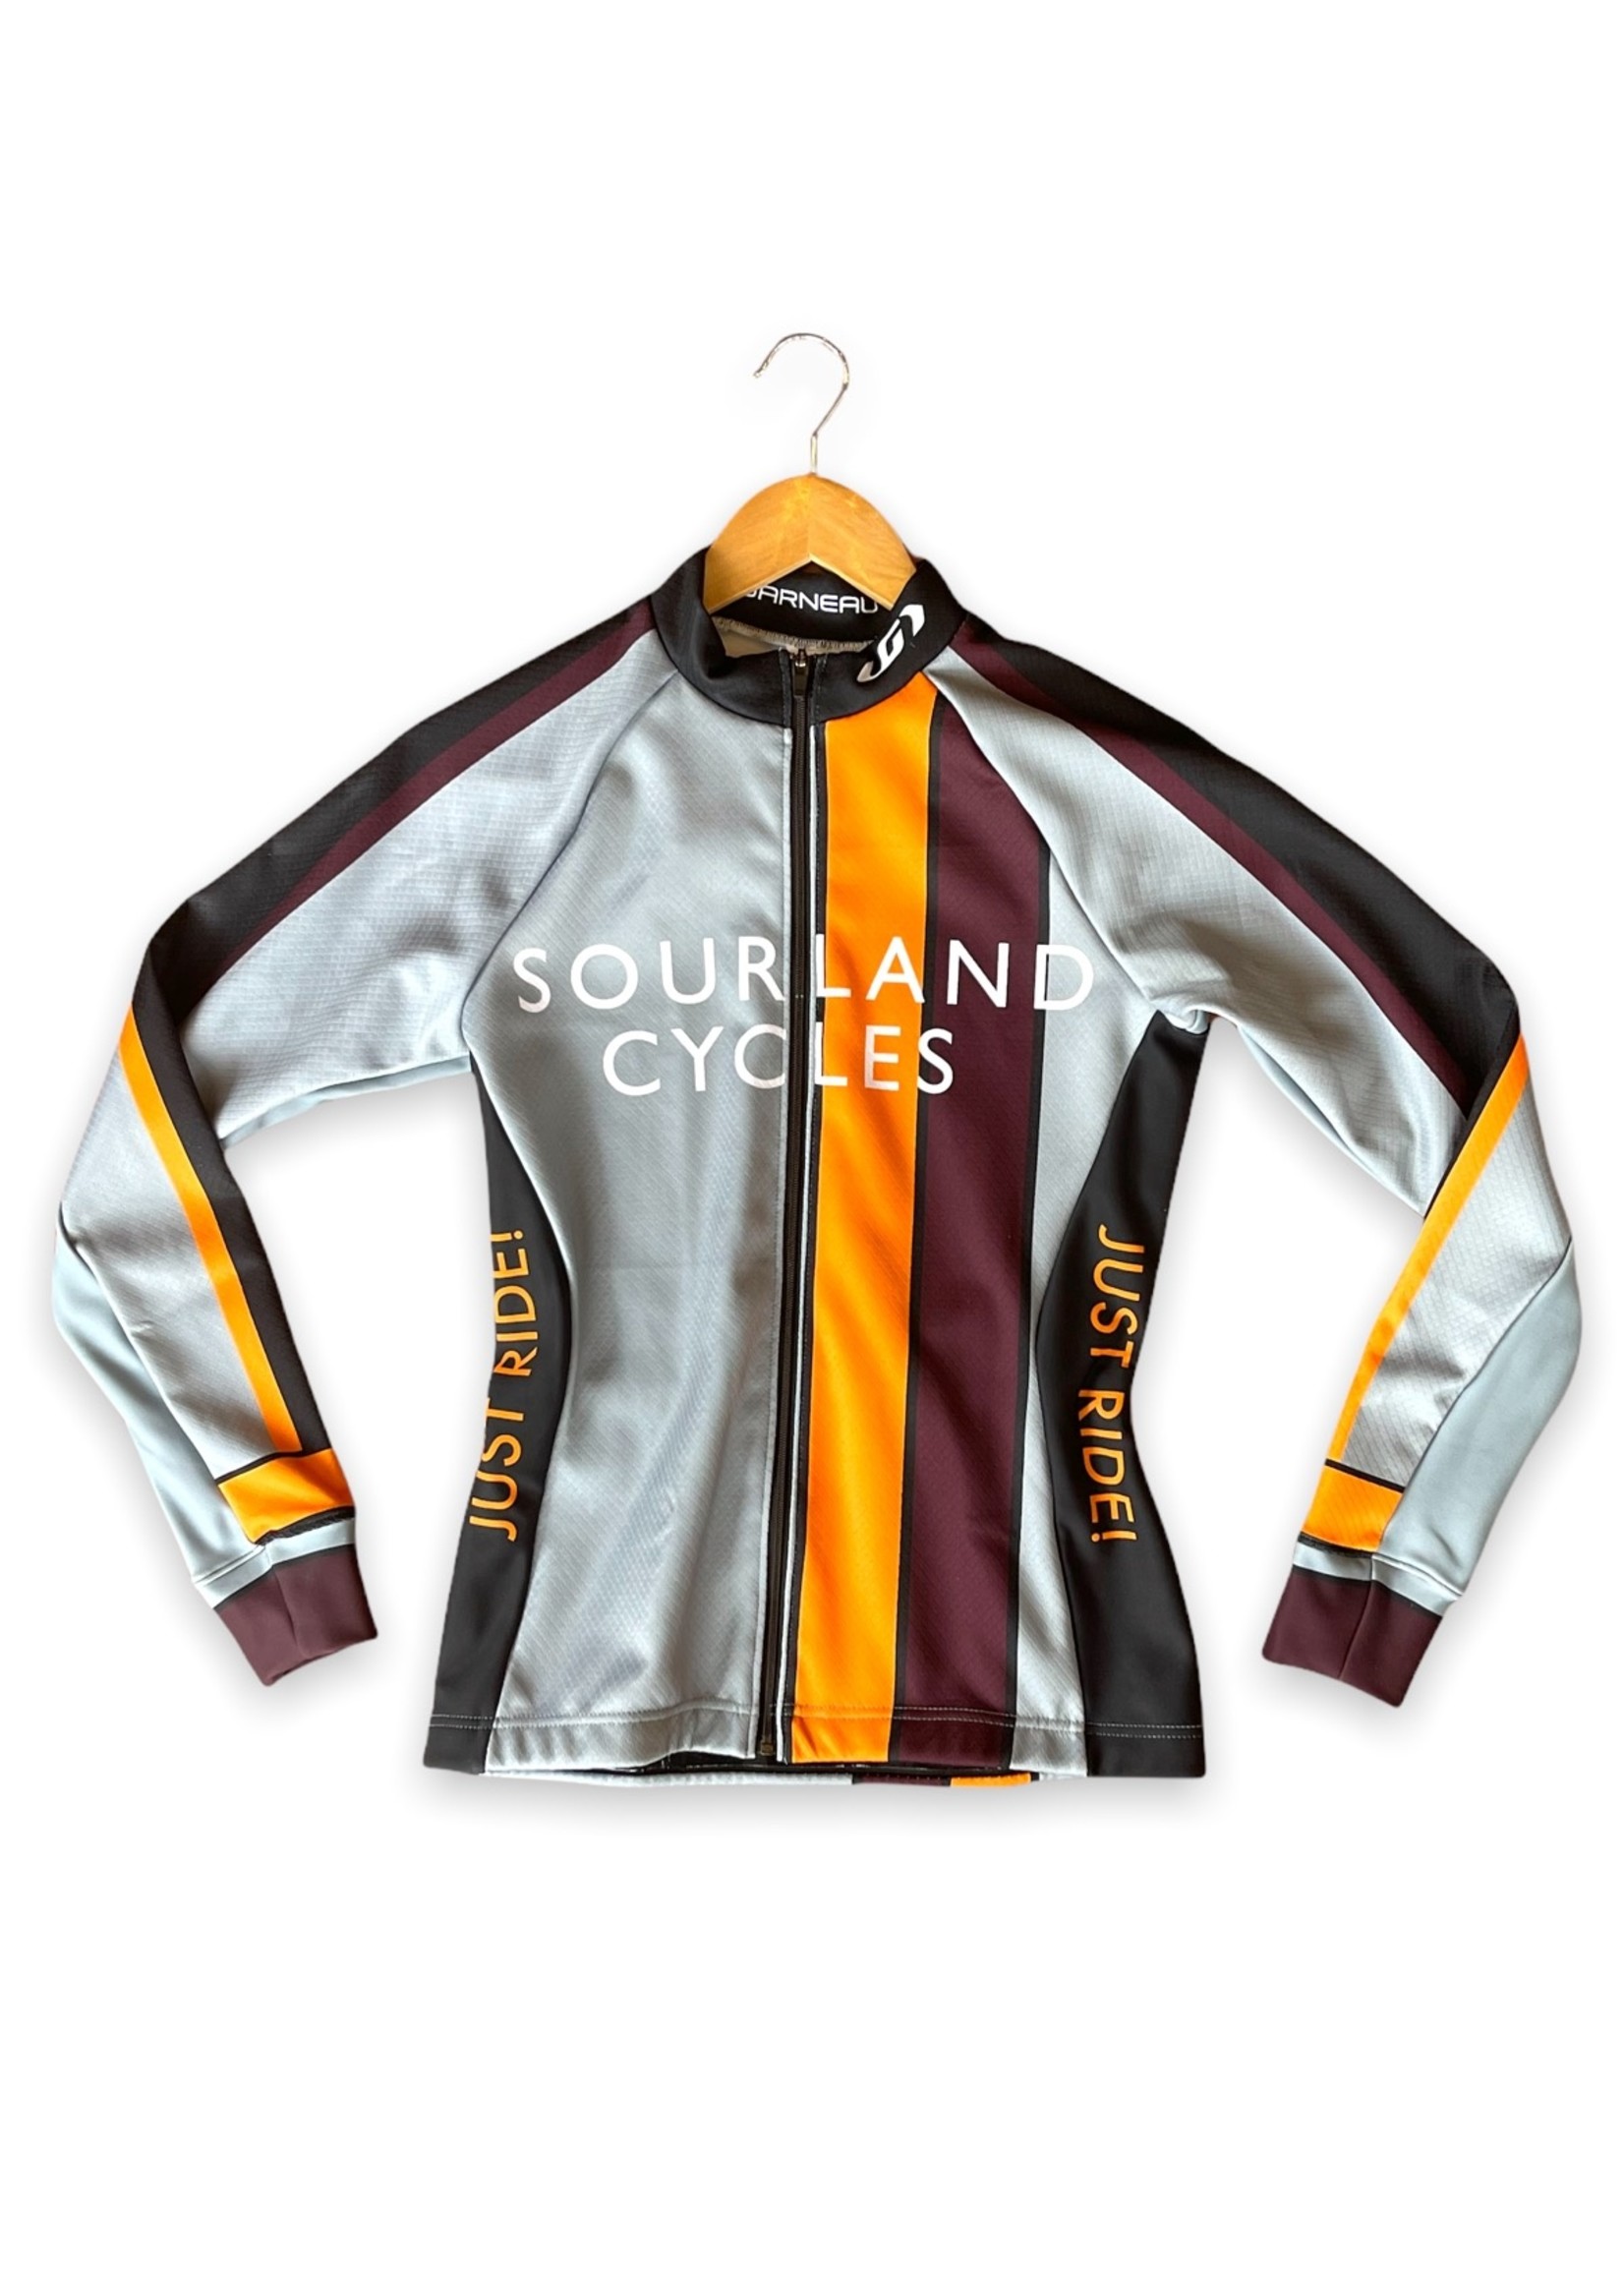 Garneau Sourland Cycles Women's Just Ride! Fleece